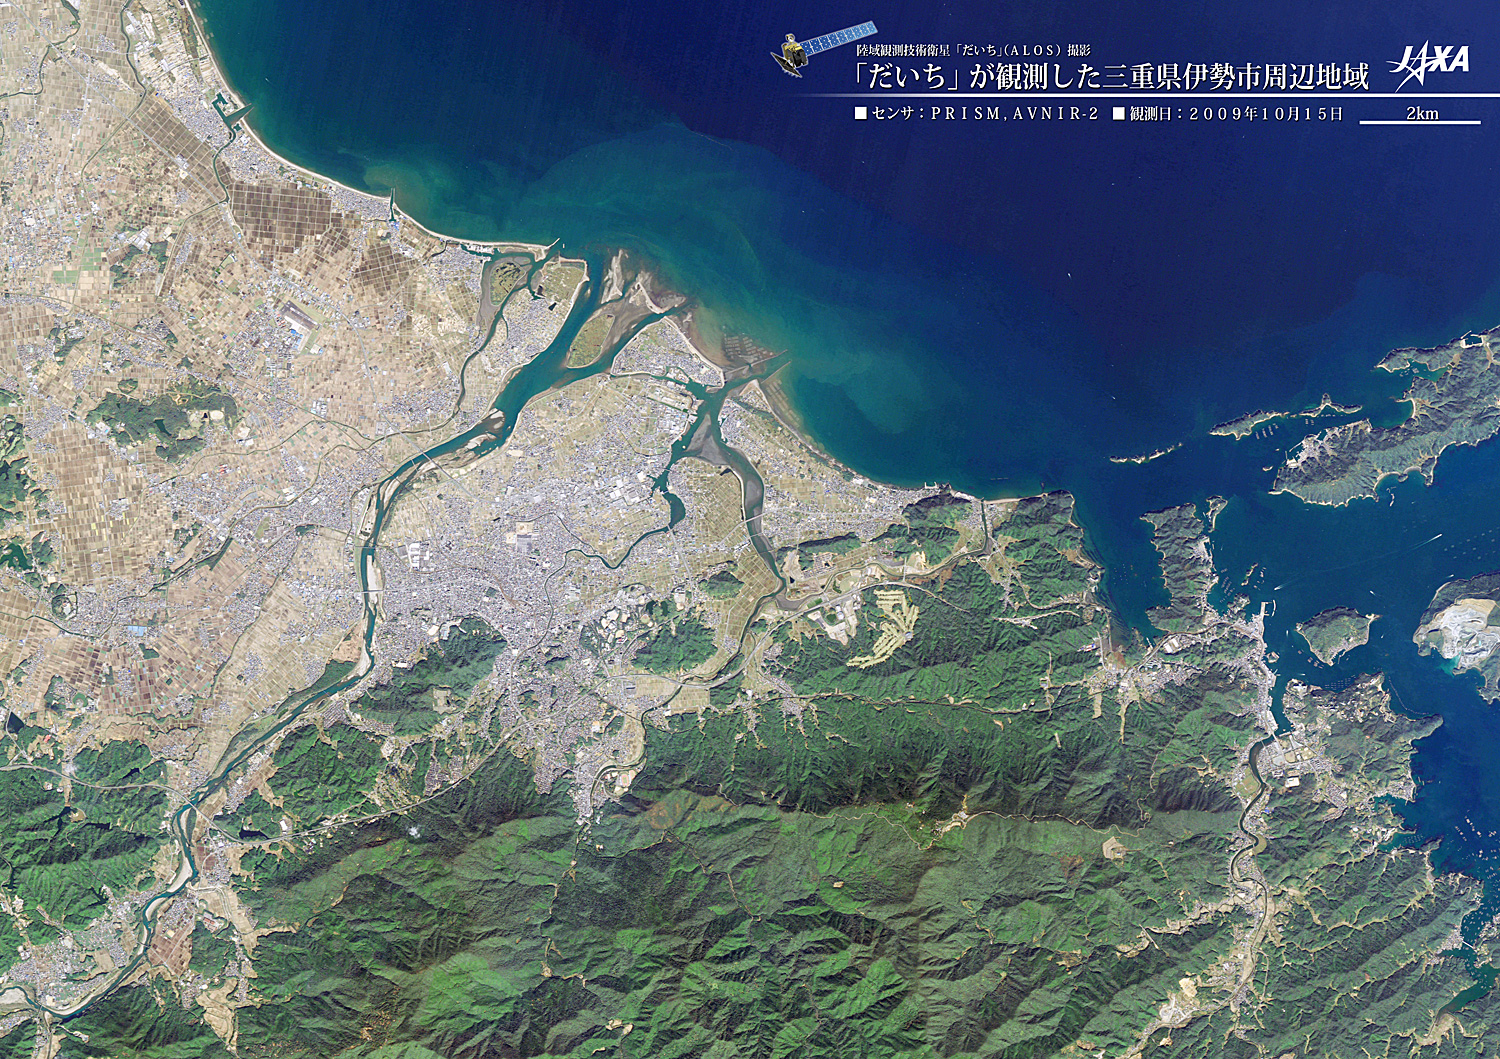 だいちから見た日本の都市 伊勢市周辺:衛星画像（ポスター仕上げ）